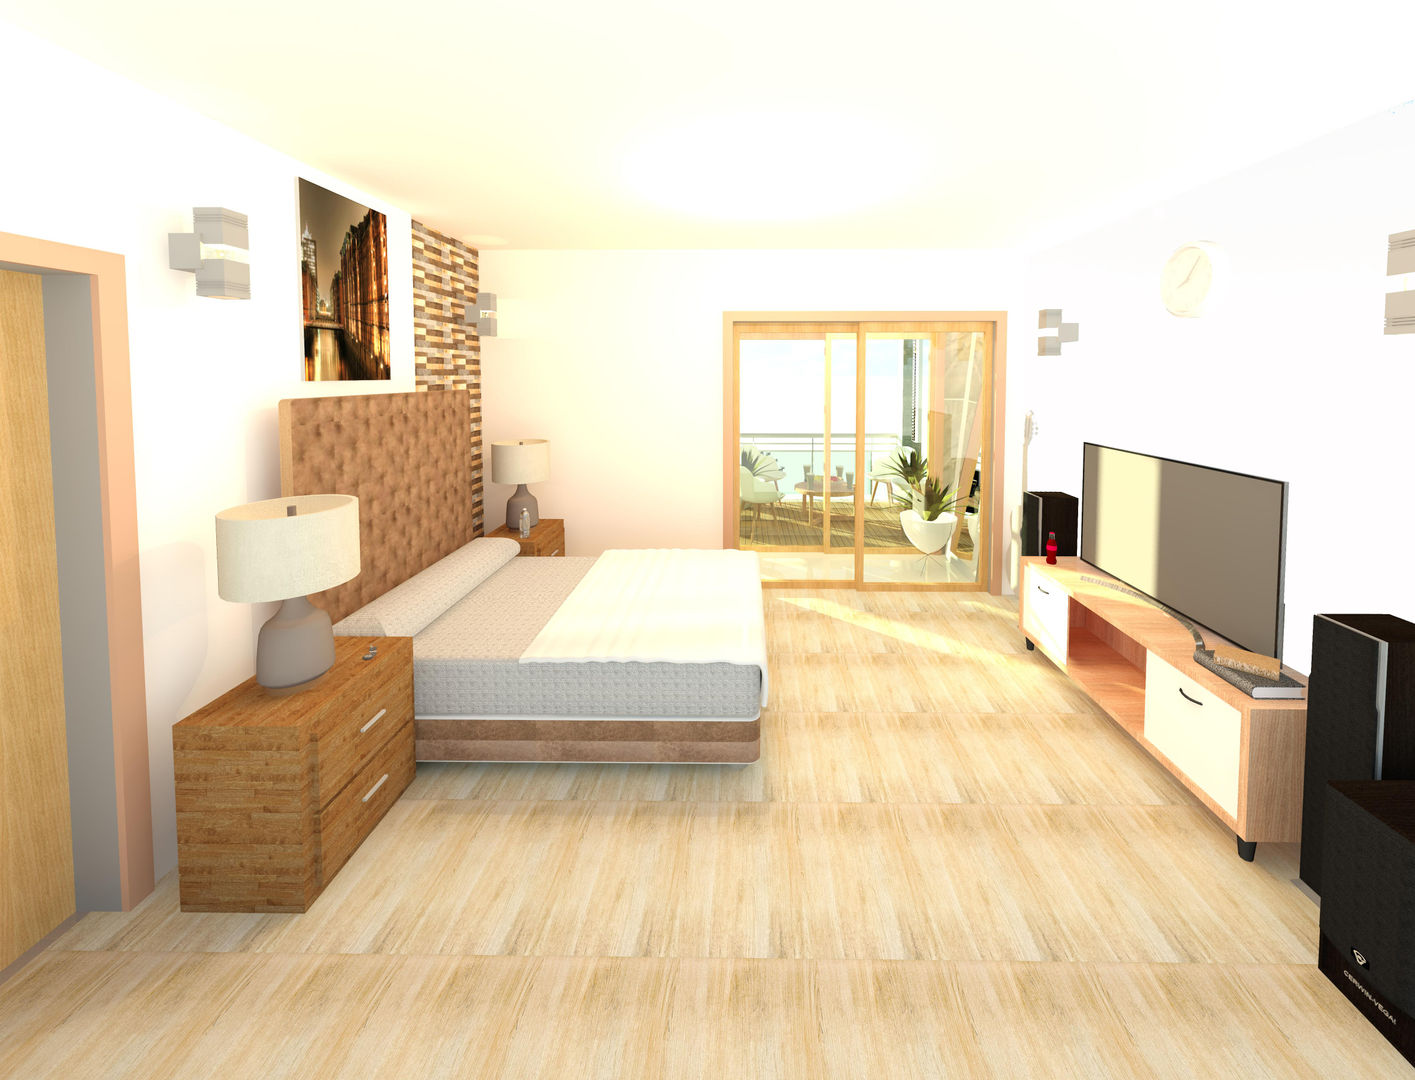 Casa pequeña - latinos, Perfil Arquitectónico Perfil Arquitectónico Modern Bedroom